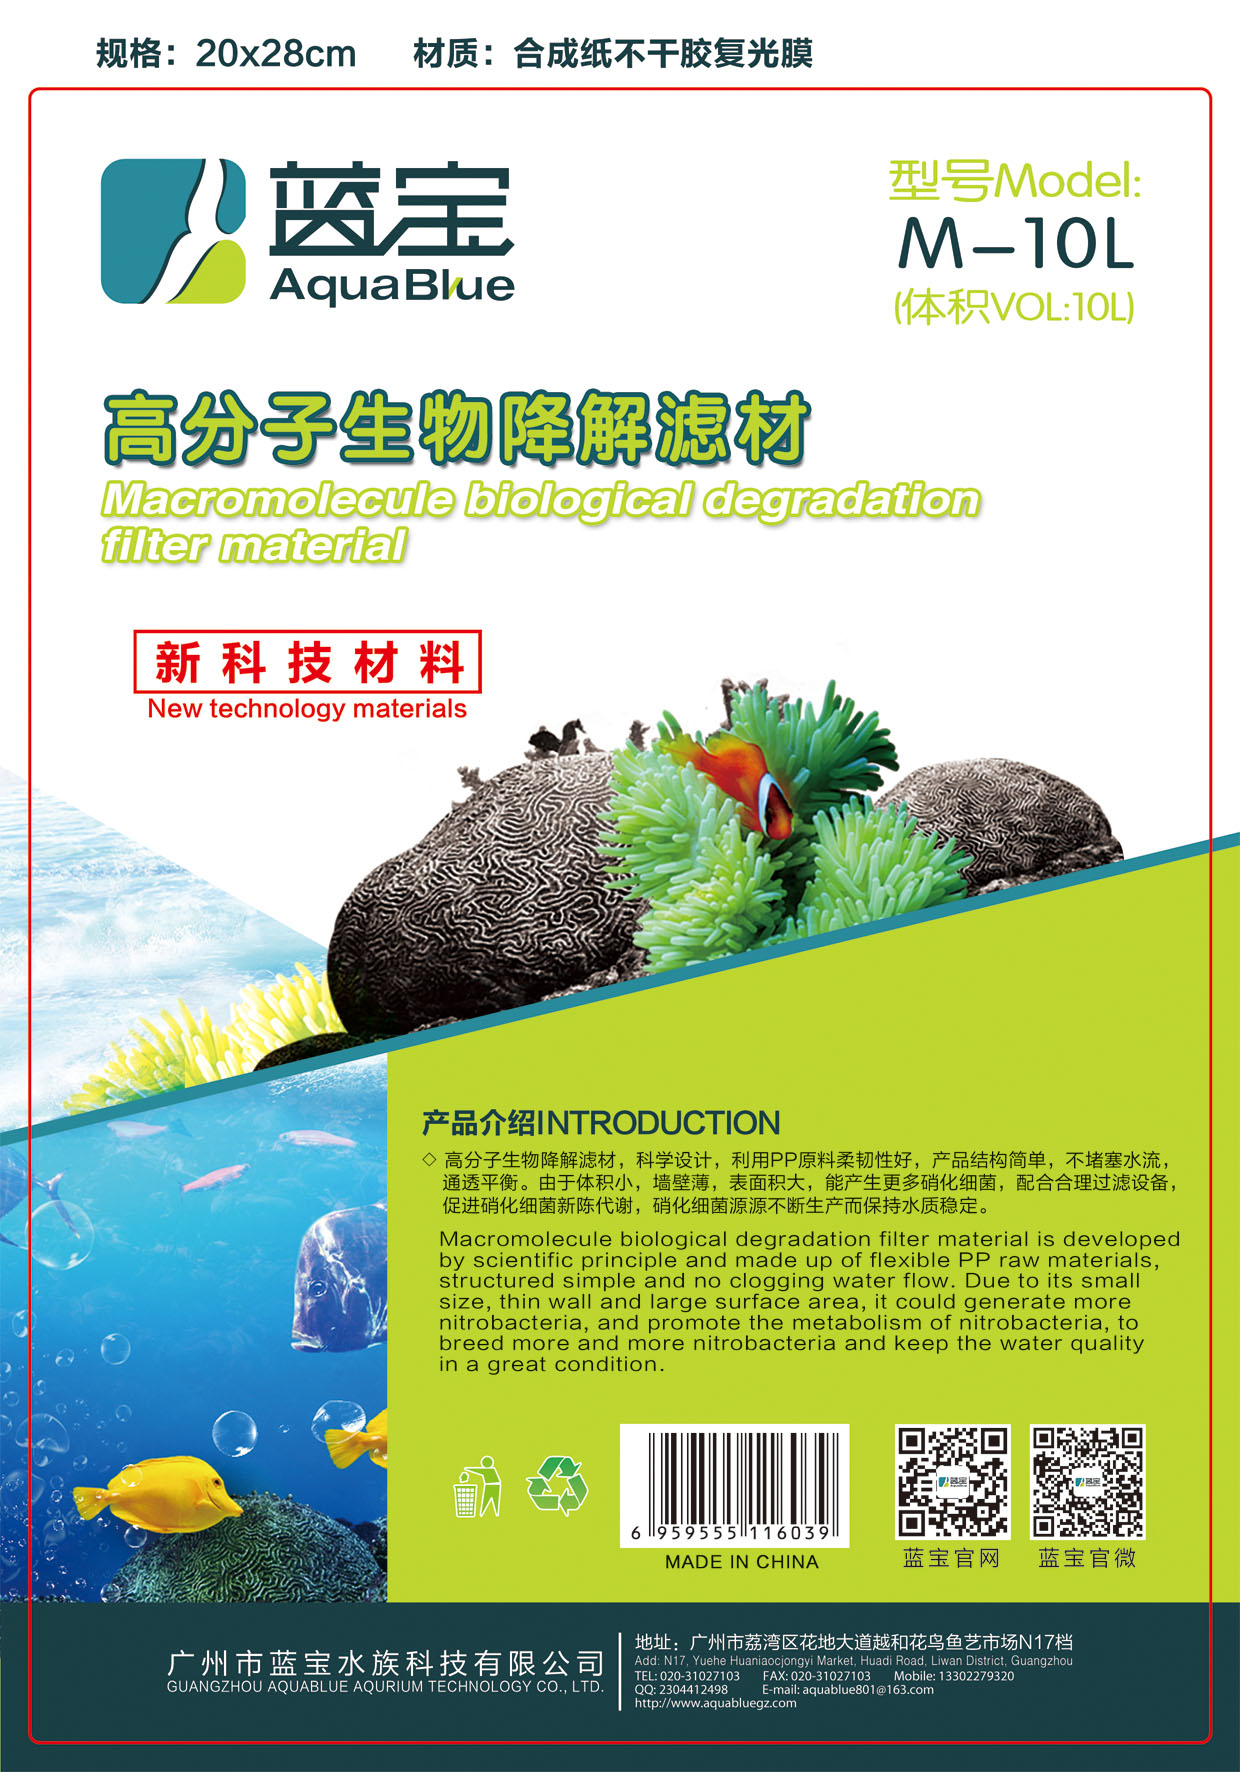 AquaBlue biological filter